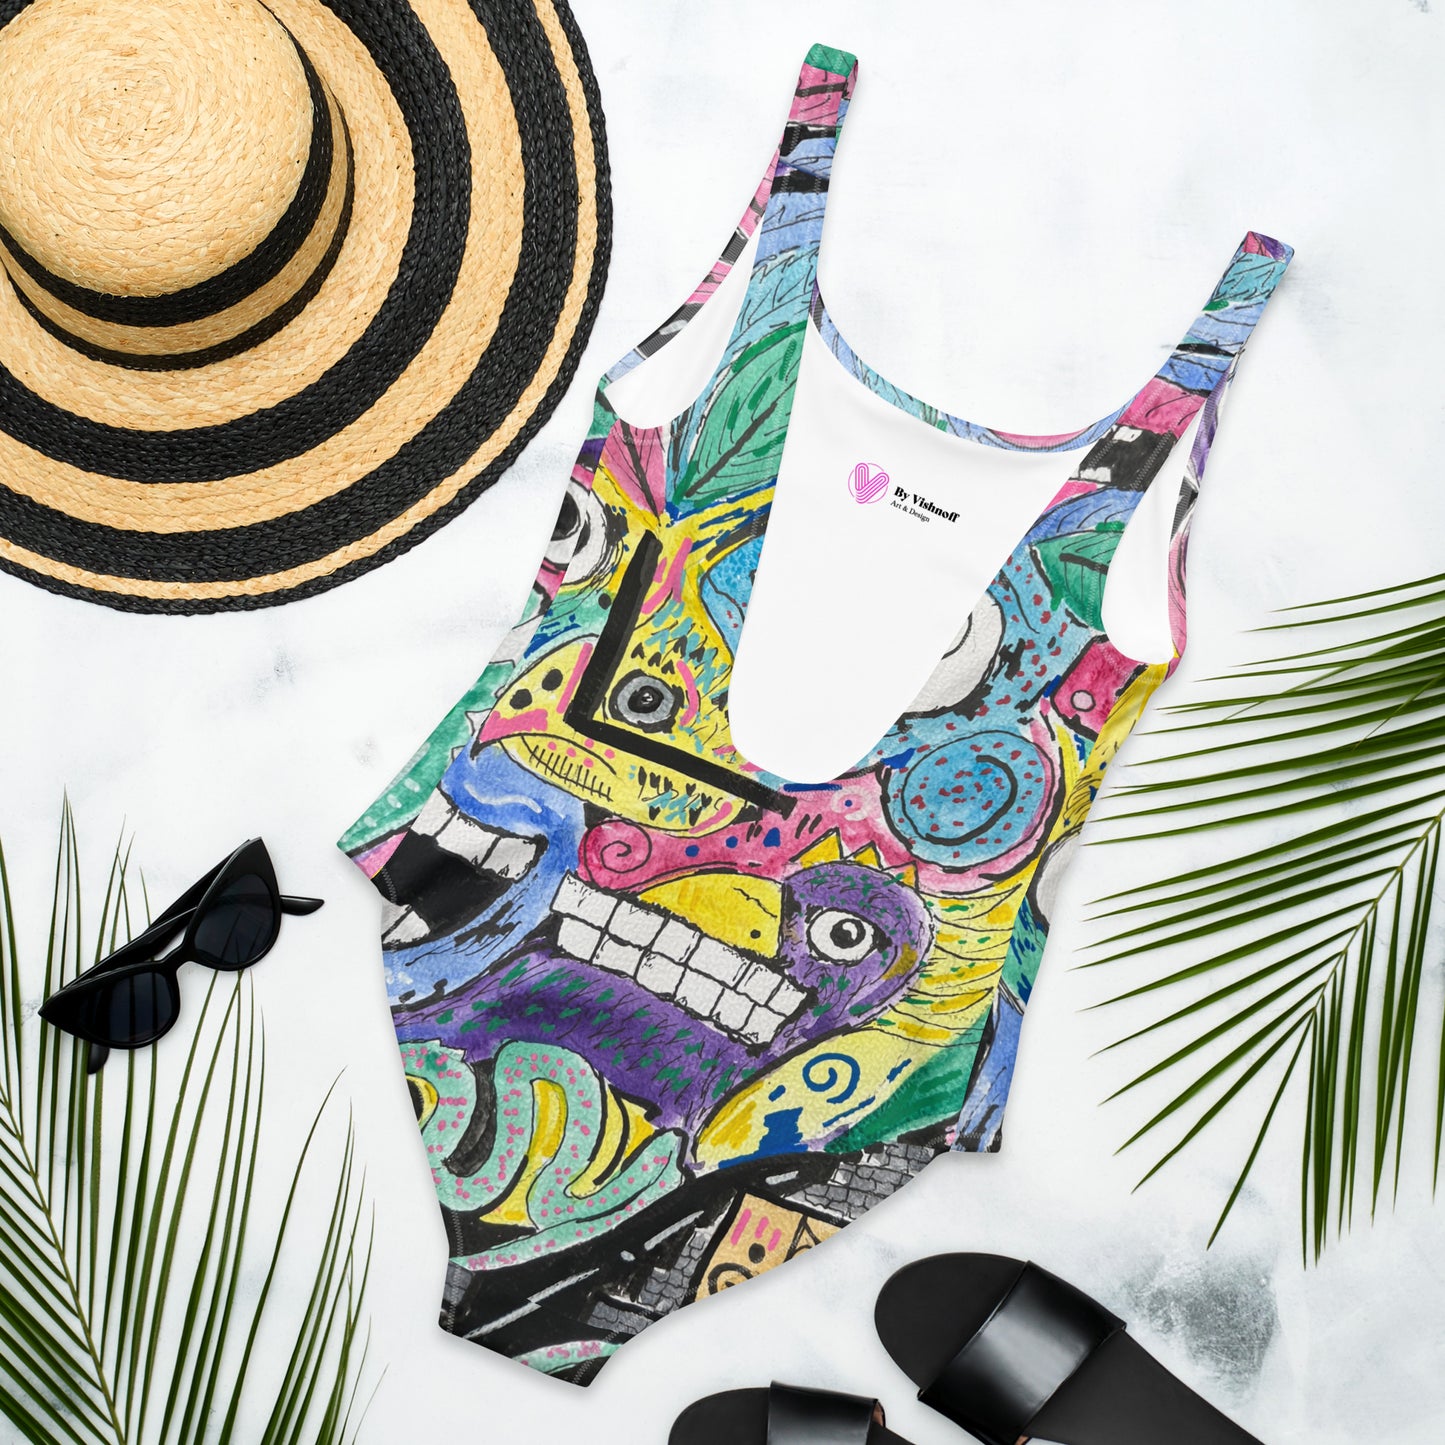 Azteca One-Piece Swimsuit